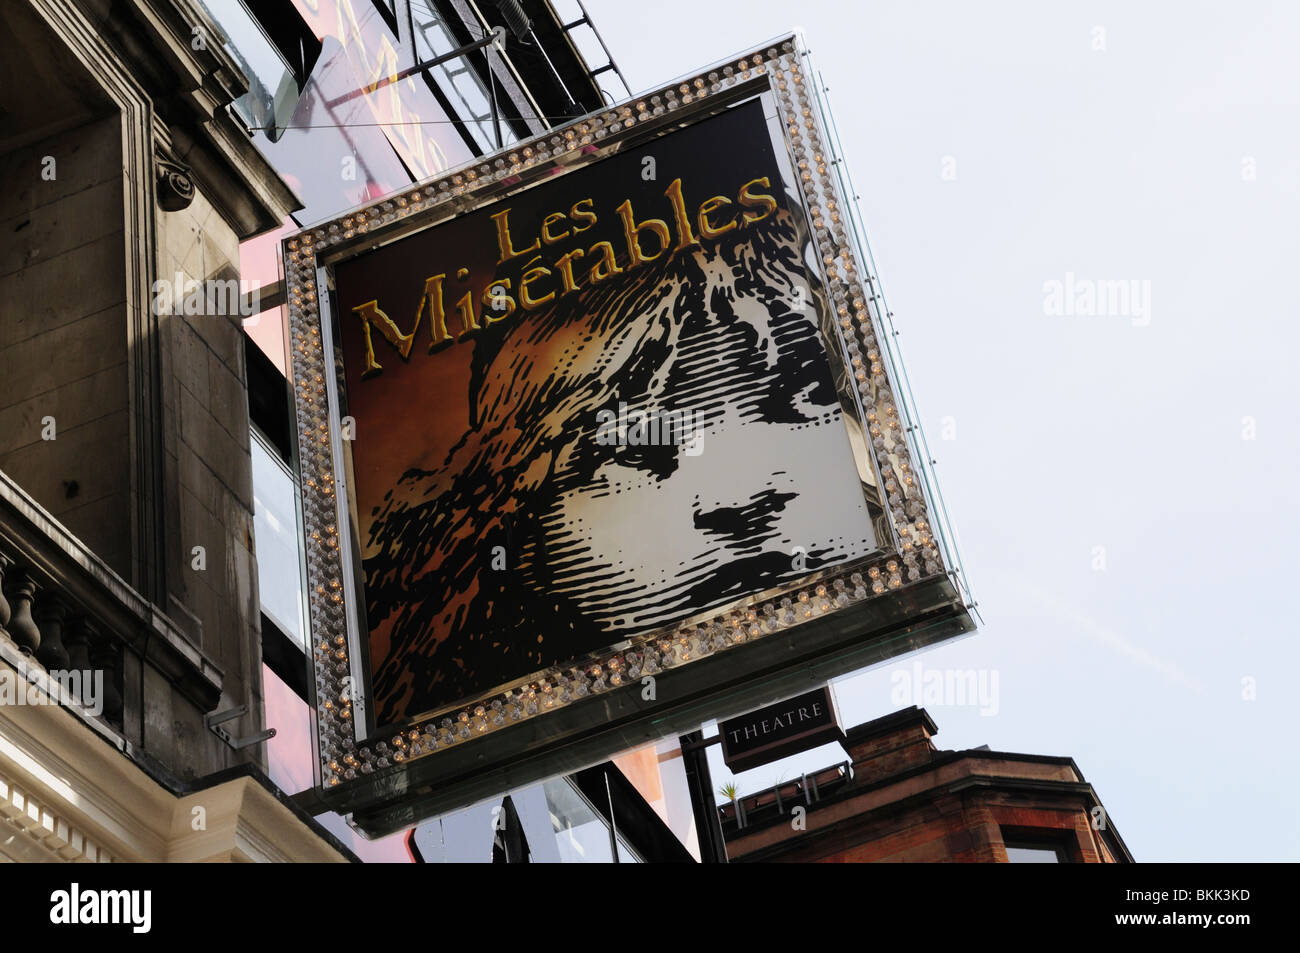 Les Miserables firmare al Queens theatre, Haymarket, London, England, Regno Unito Foto Stock